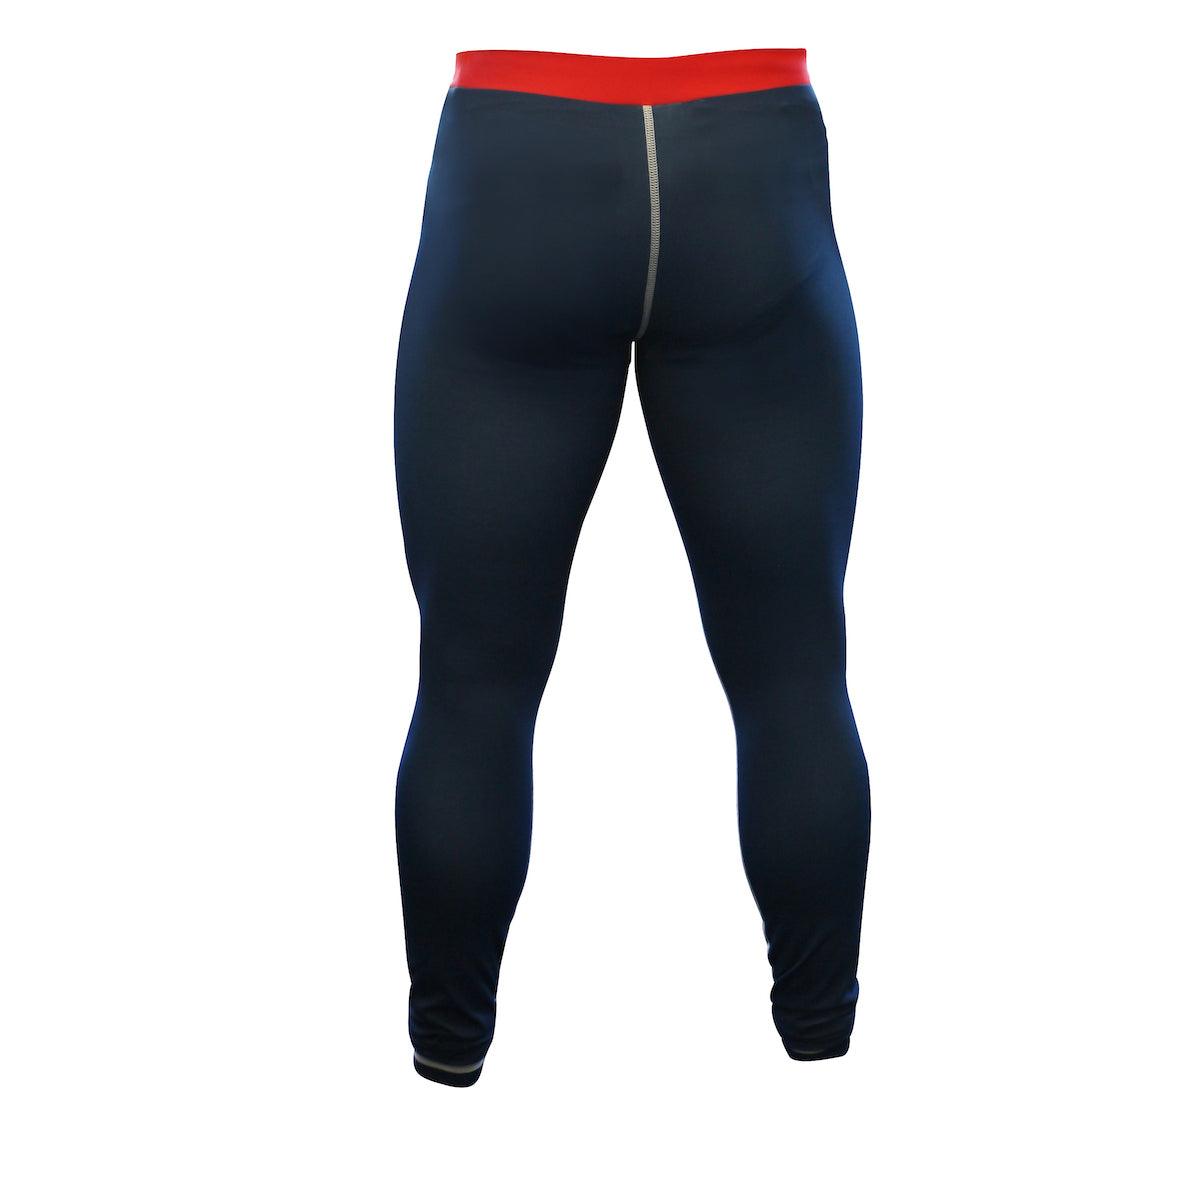 Pantalon de compression Adidas - Bleu/Blanc/Rouge ADICSP01 - Boutique des Arts Martiaux